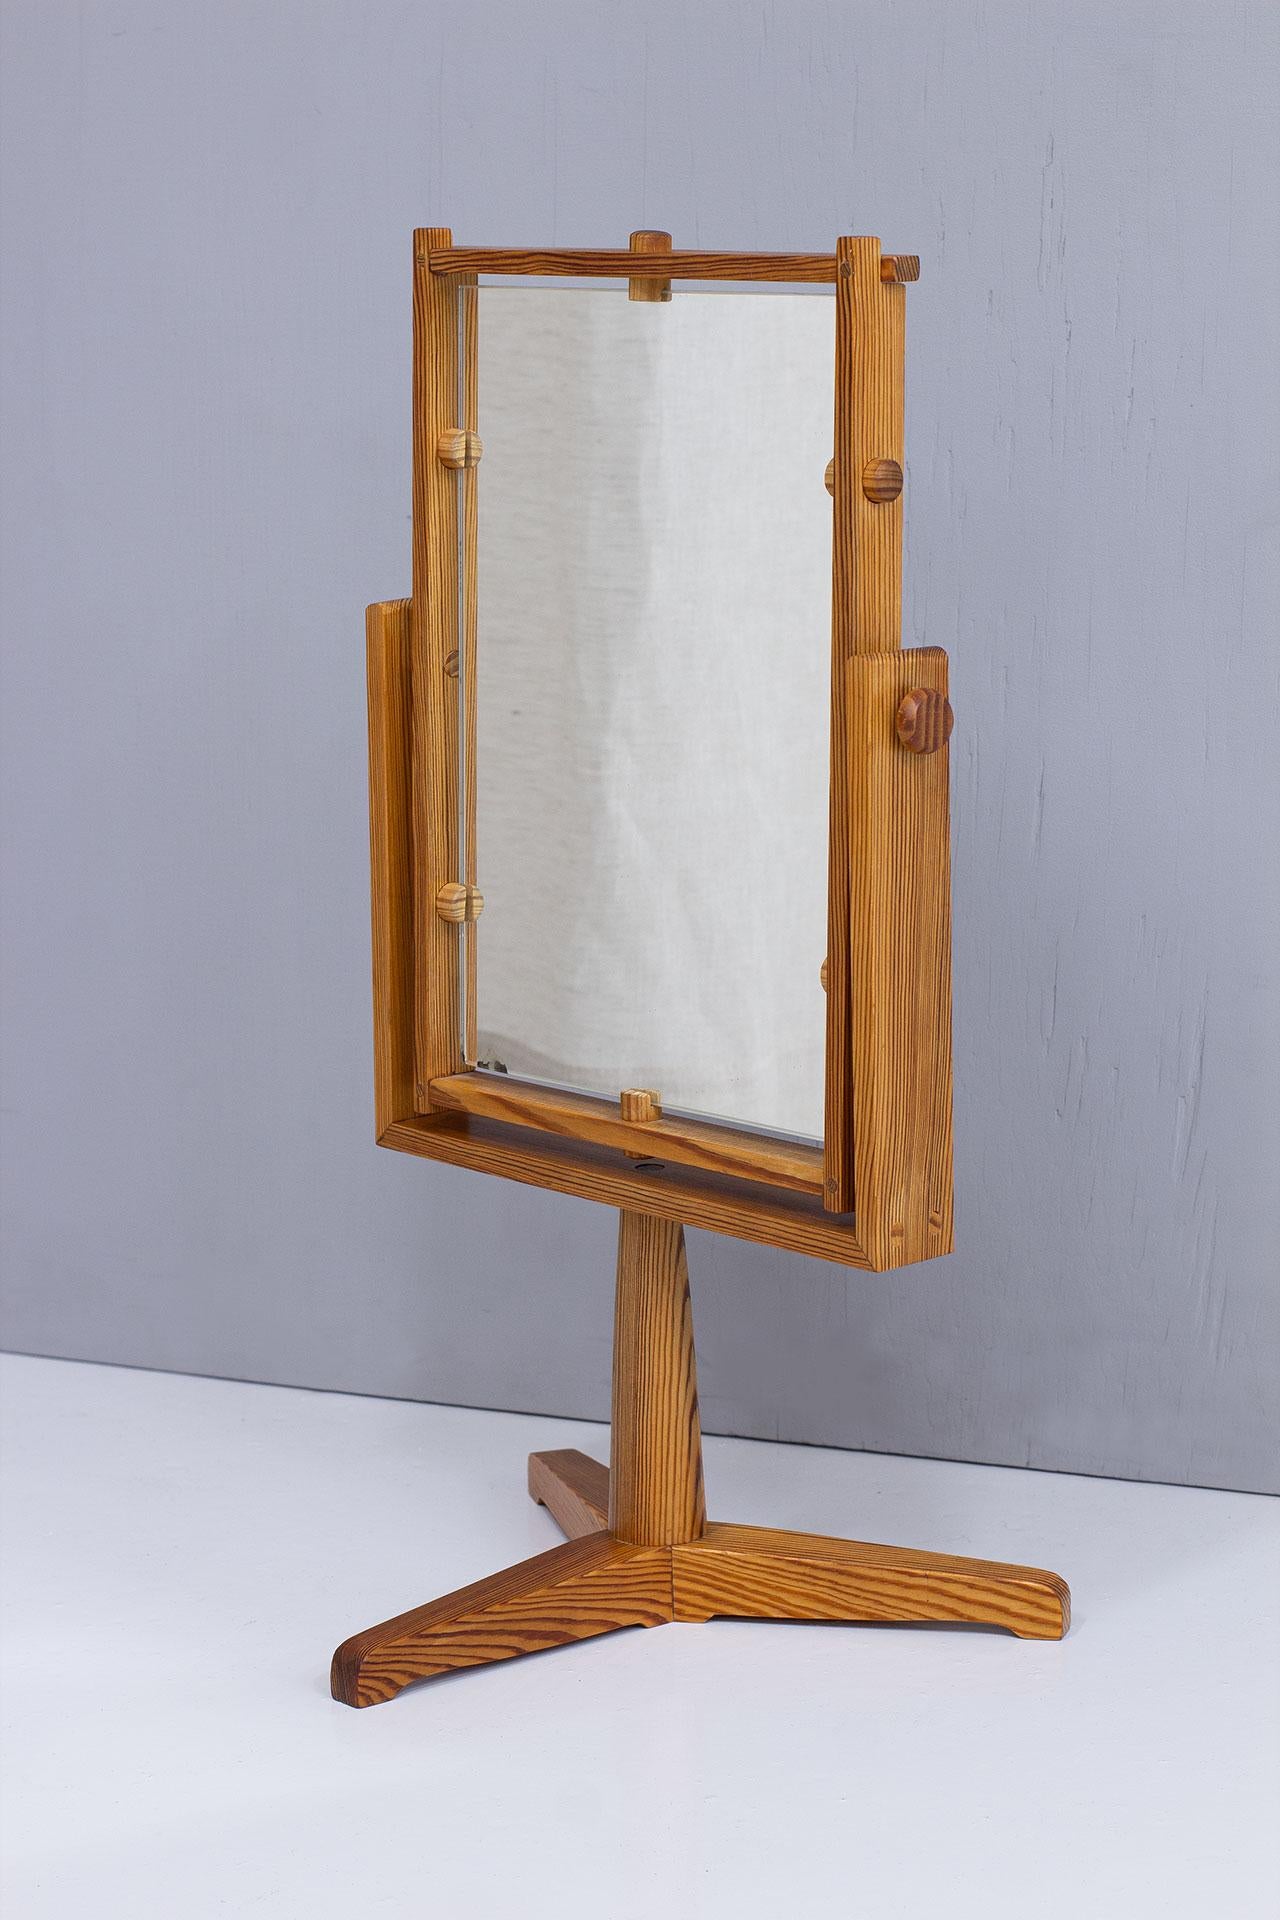 Miroir de table fabriqué en Suède dans les années 1960.  Fabriqué en pin massif avec une menuiserie et des détails élégants dans la réalisation. Dos du meuble-lavabo recouvert à l'origine d'un placage de bois.
